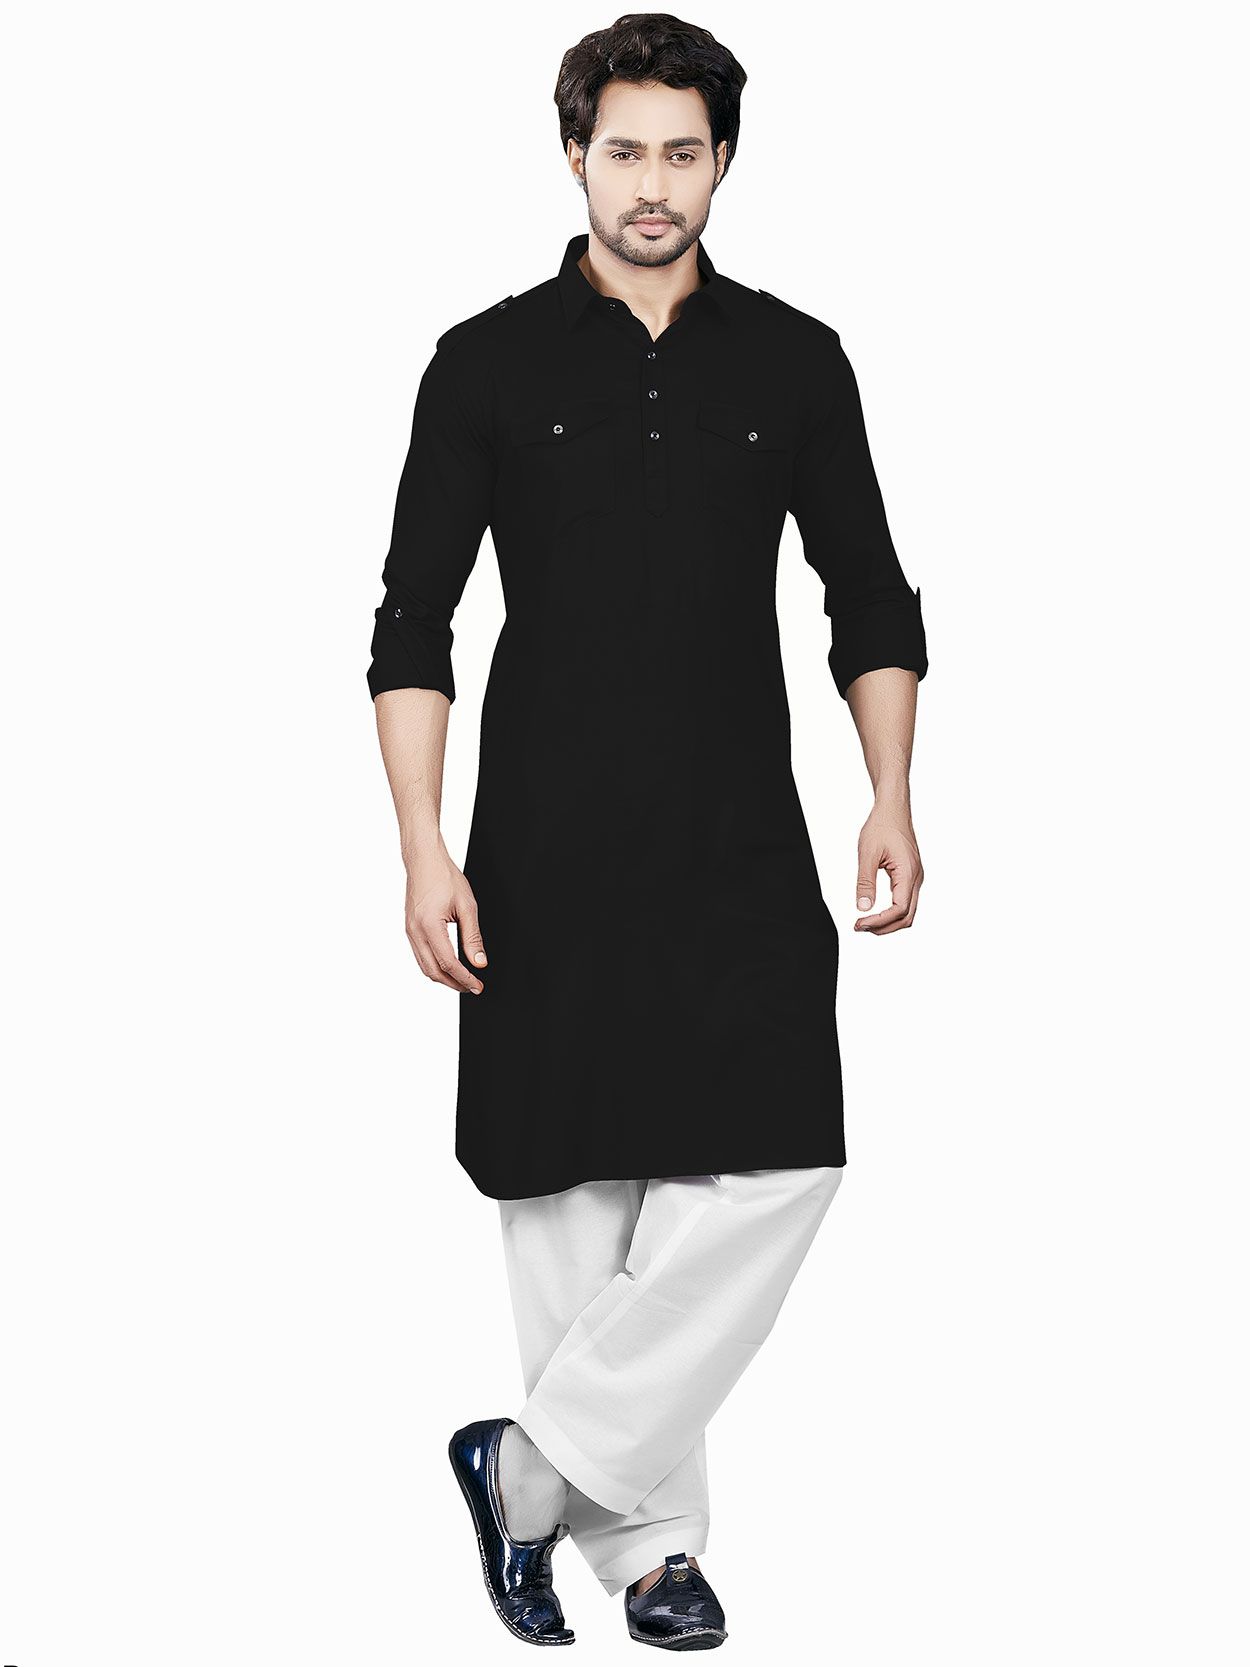 Cotton,jute cotton Men''s Royal Black Pathani Suit at Rs 650/set in Bhopal